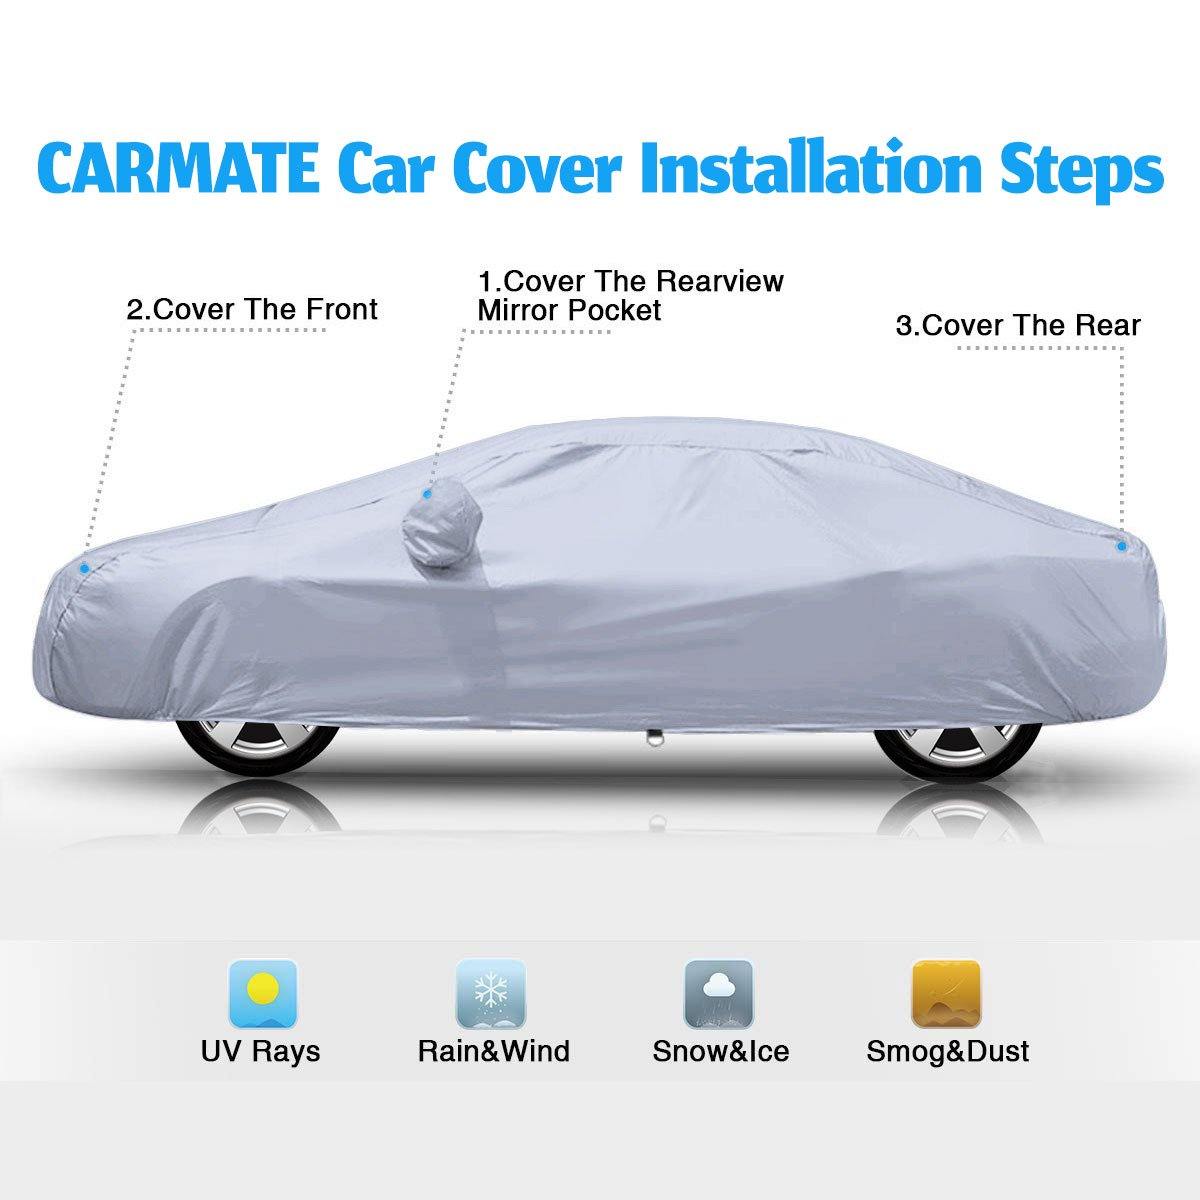 Carmate Premium Car Body Cover Silver Matty (Silver) for  Audi - Q5 - CARMATE®